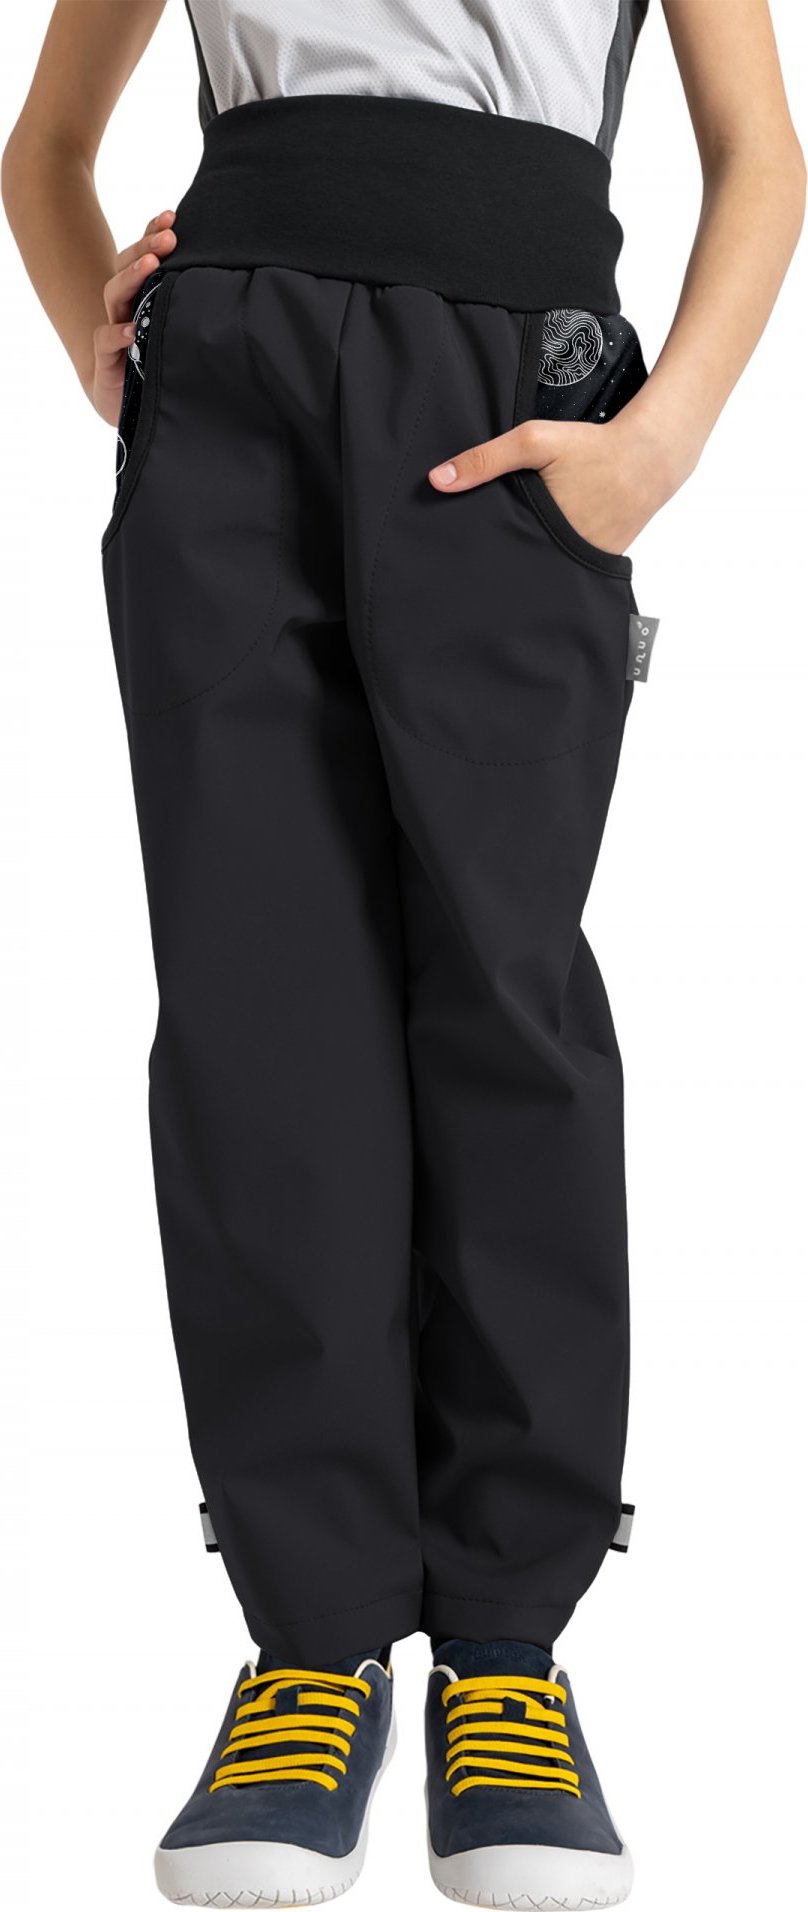 Dětské softshellové kalhoty UNUO Basic s fleecem, černé, Planety Velikost: 104/110